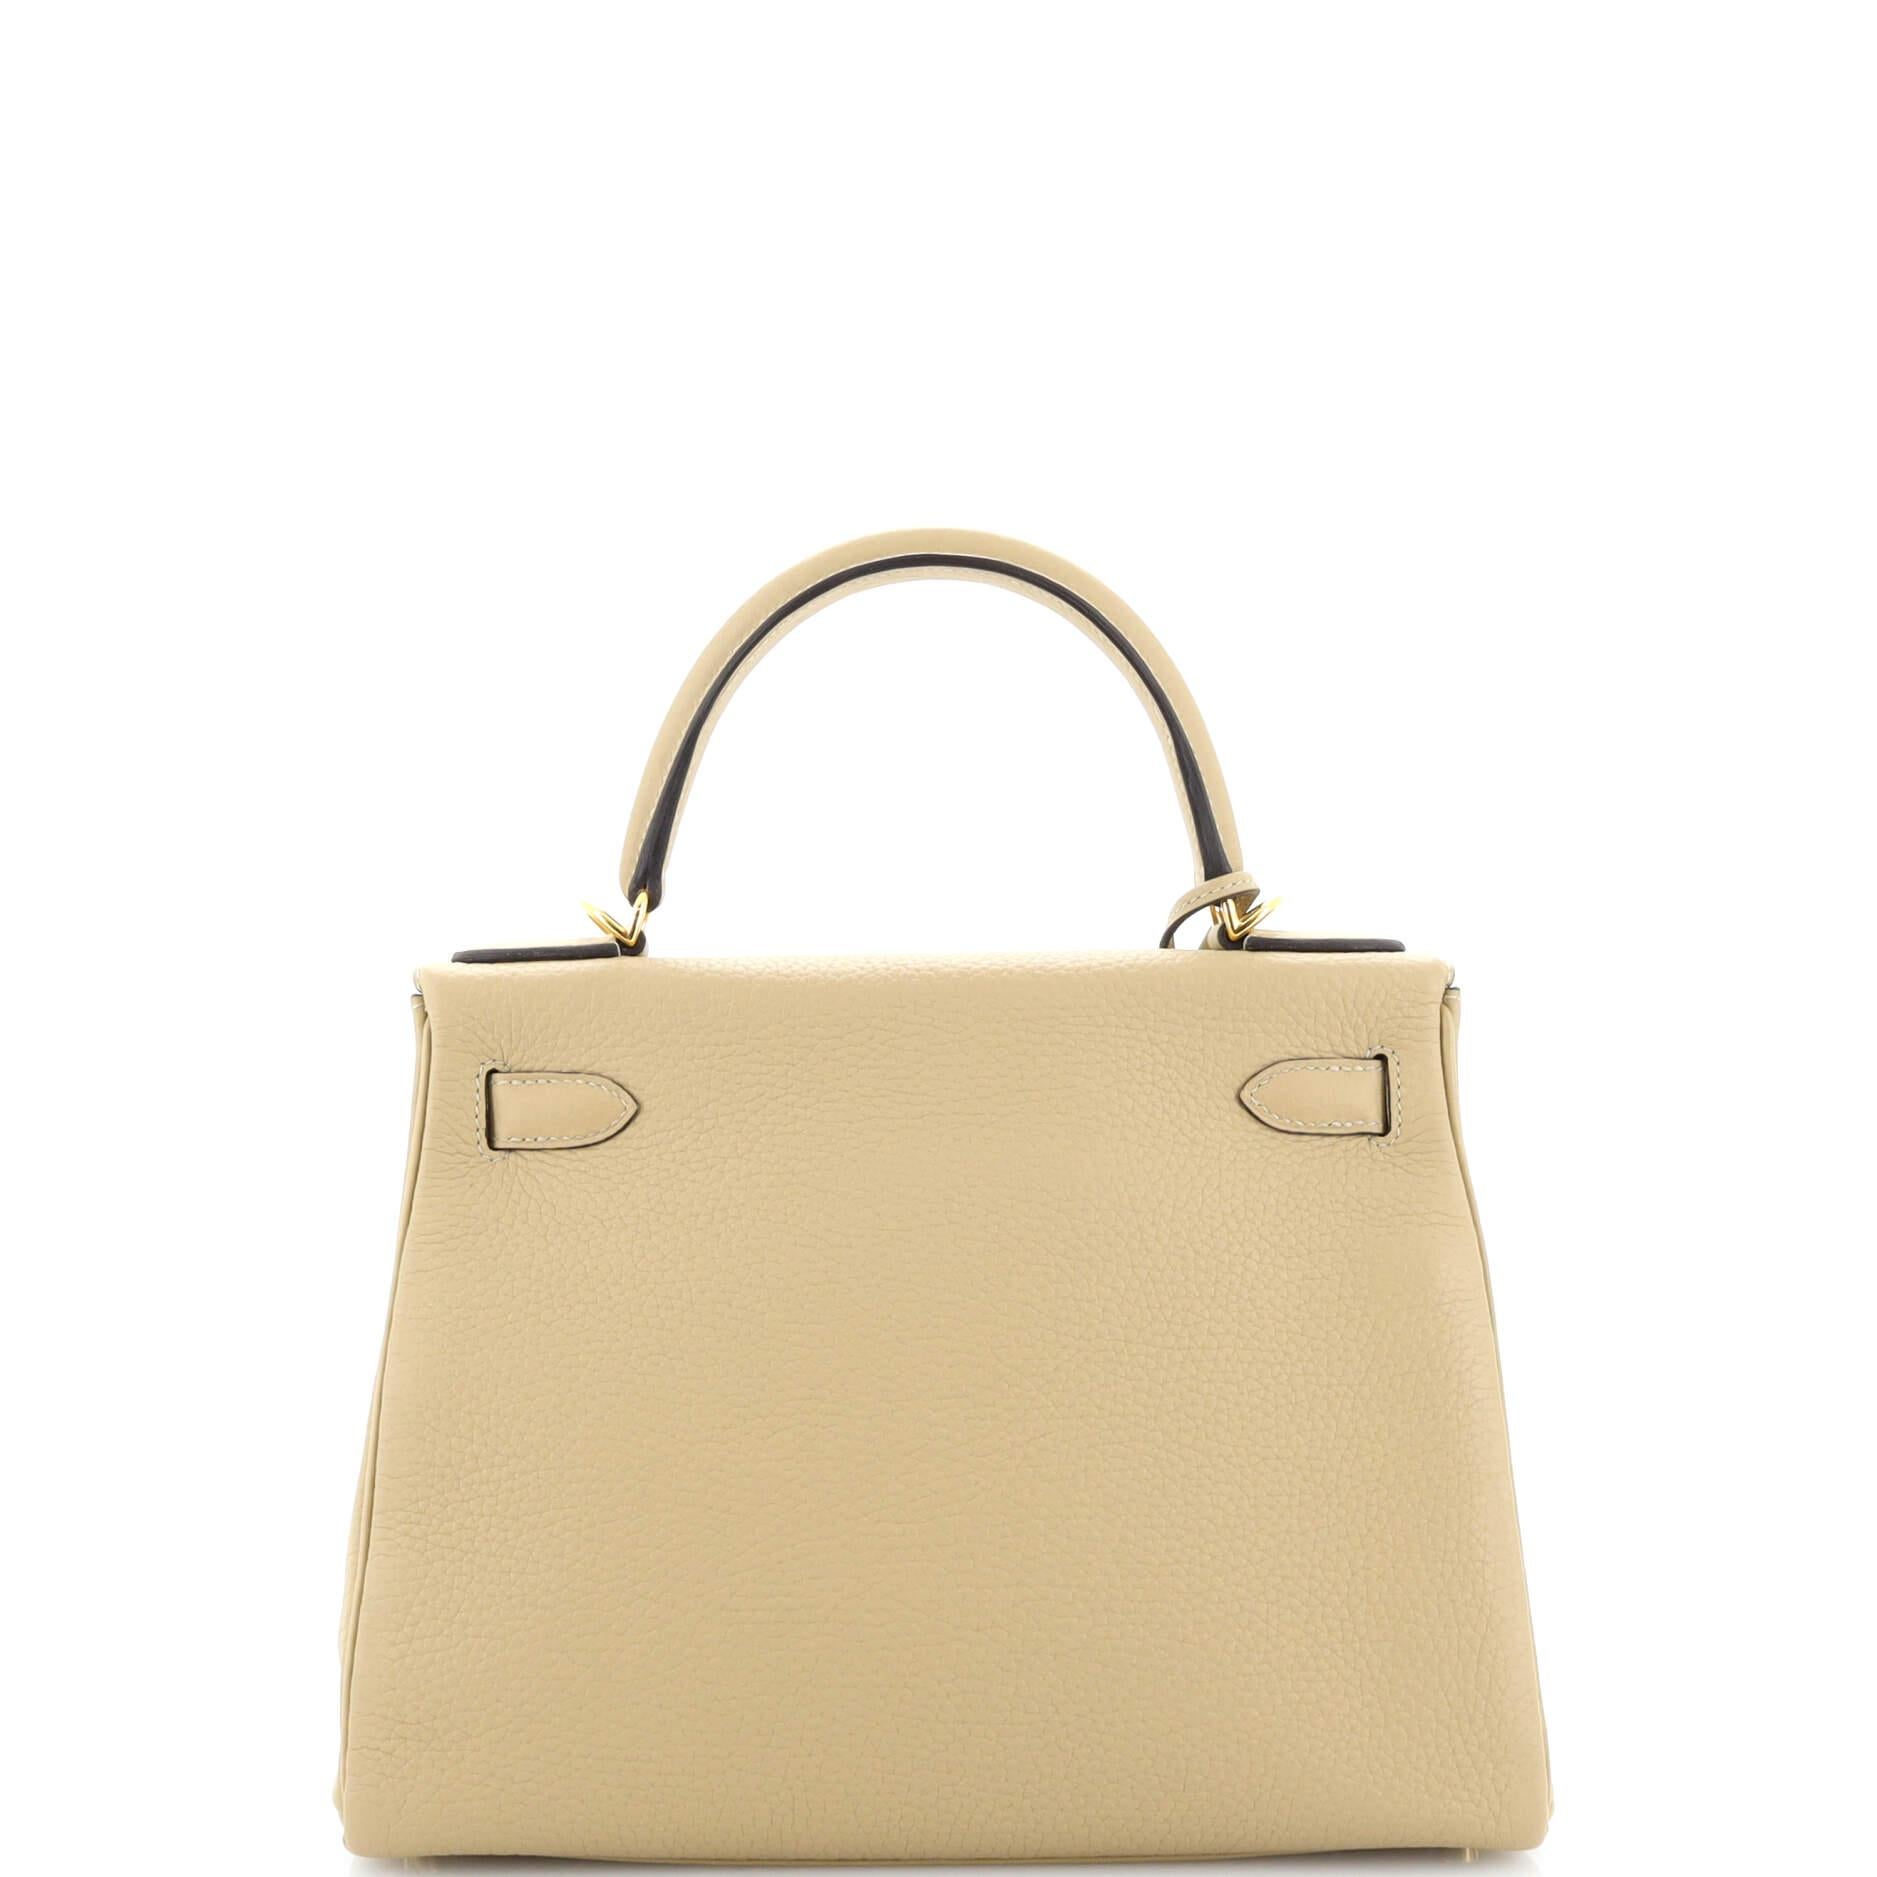 Hermès Kelly Handtasche Light Clemence mit Goldbeschlägen 28 für Damen oder Herren